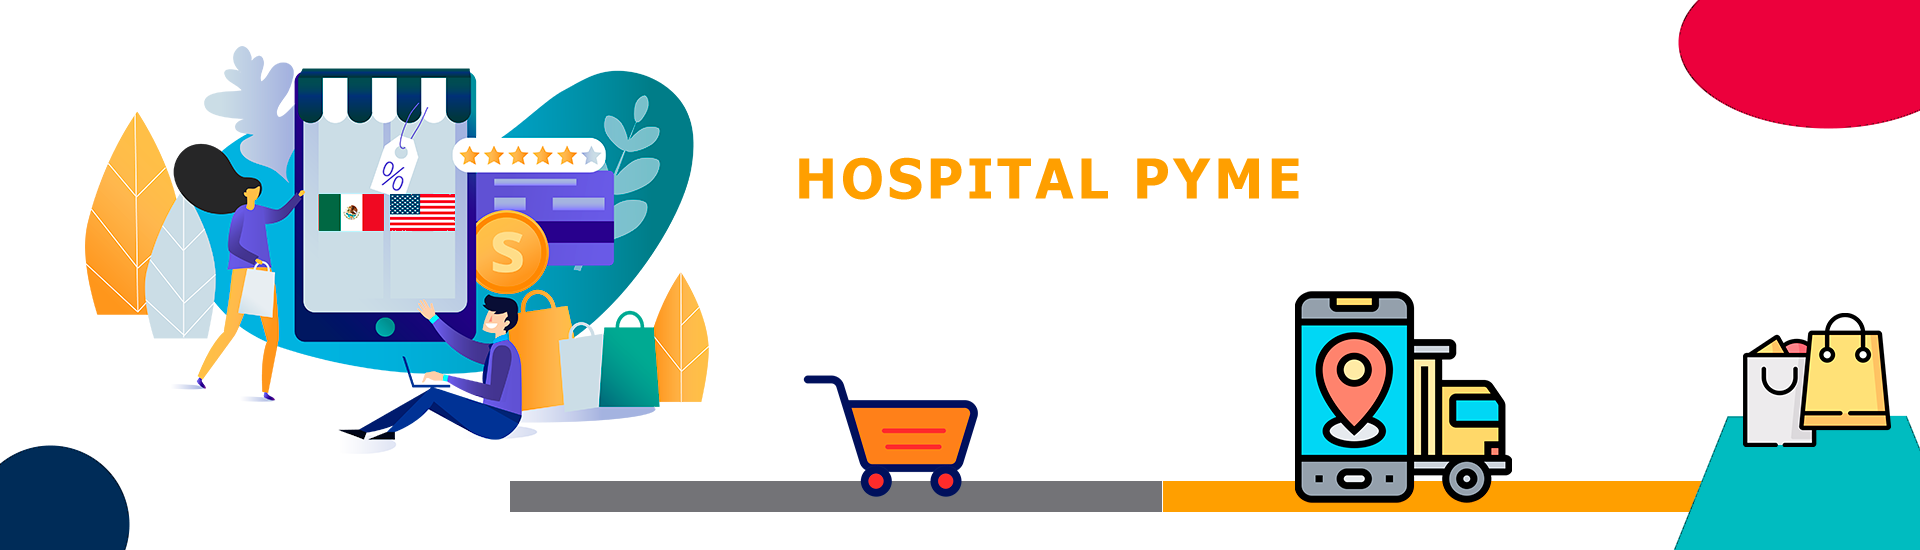 Imagen header HospitalPyme